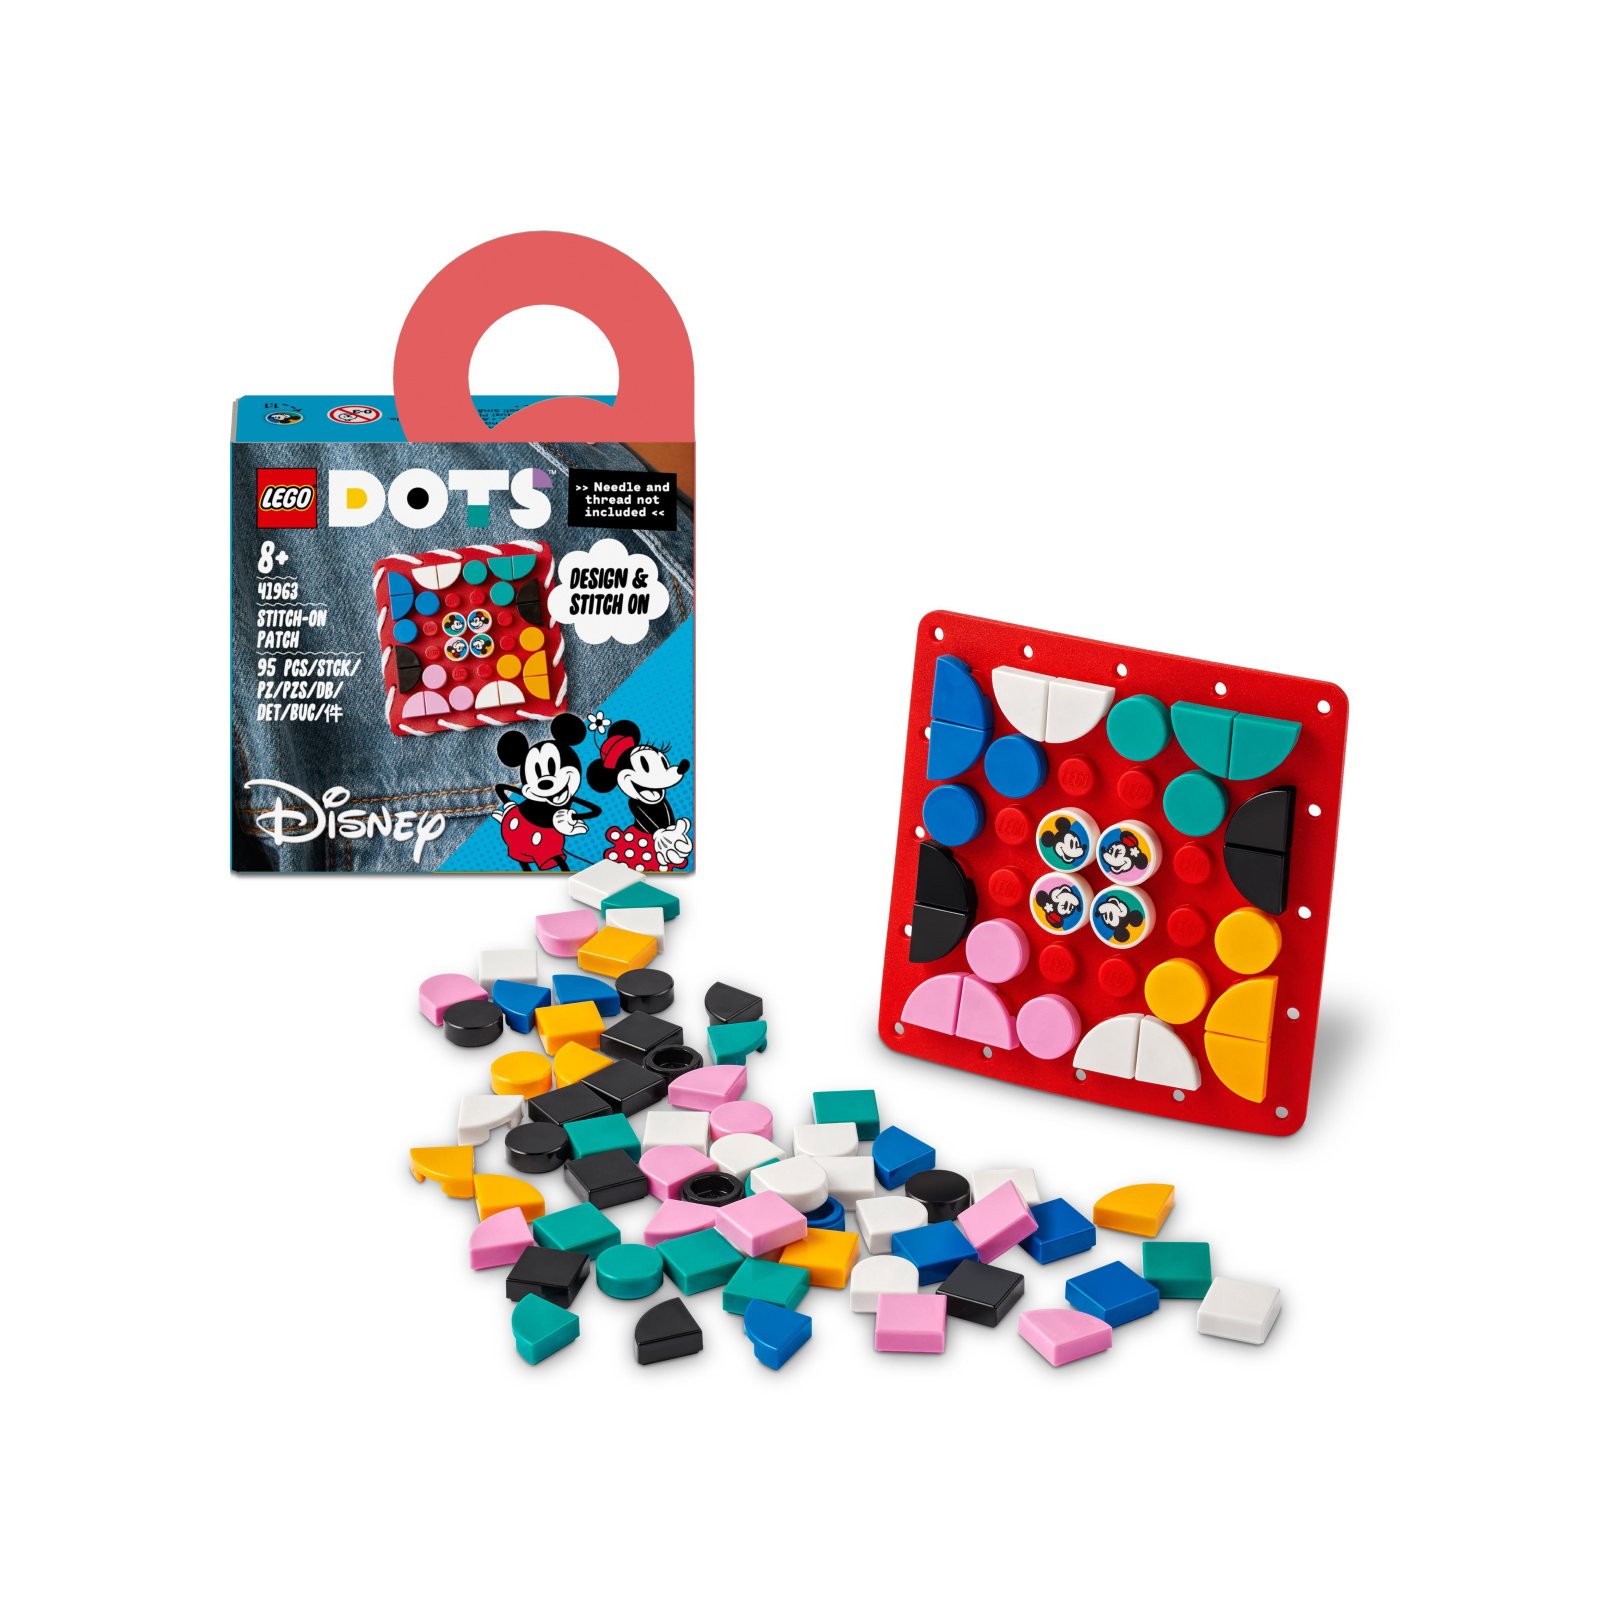 Lego dots 41963 disney patch stitch-on topolino e minnie, kit fai da te, toppa da cucire per decorare vestiti o accessori - DOTS, Disney Stitch, Minnie